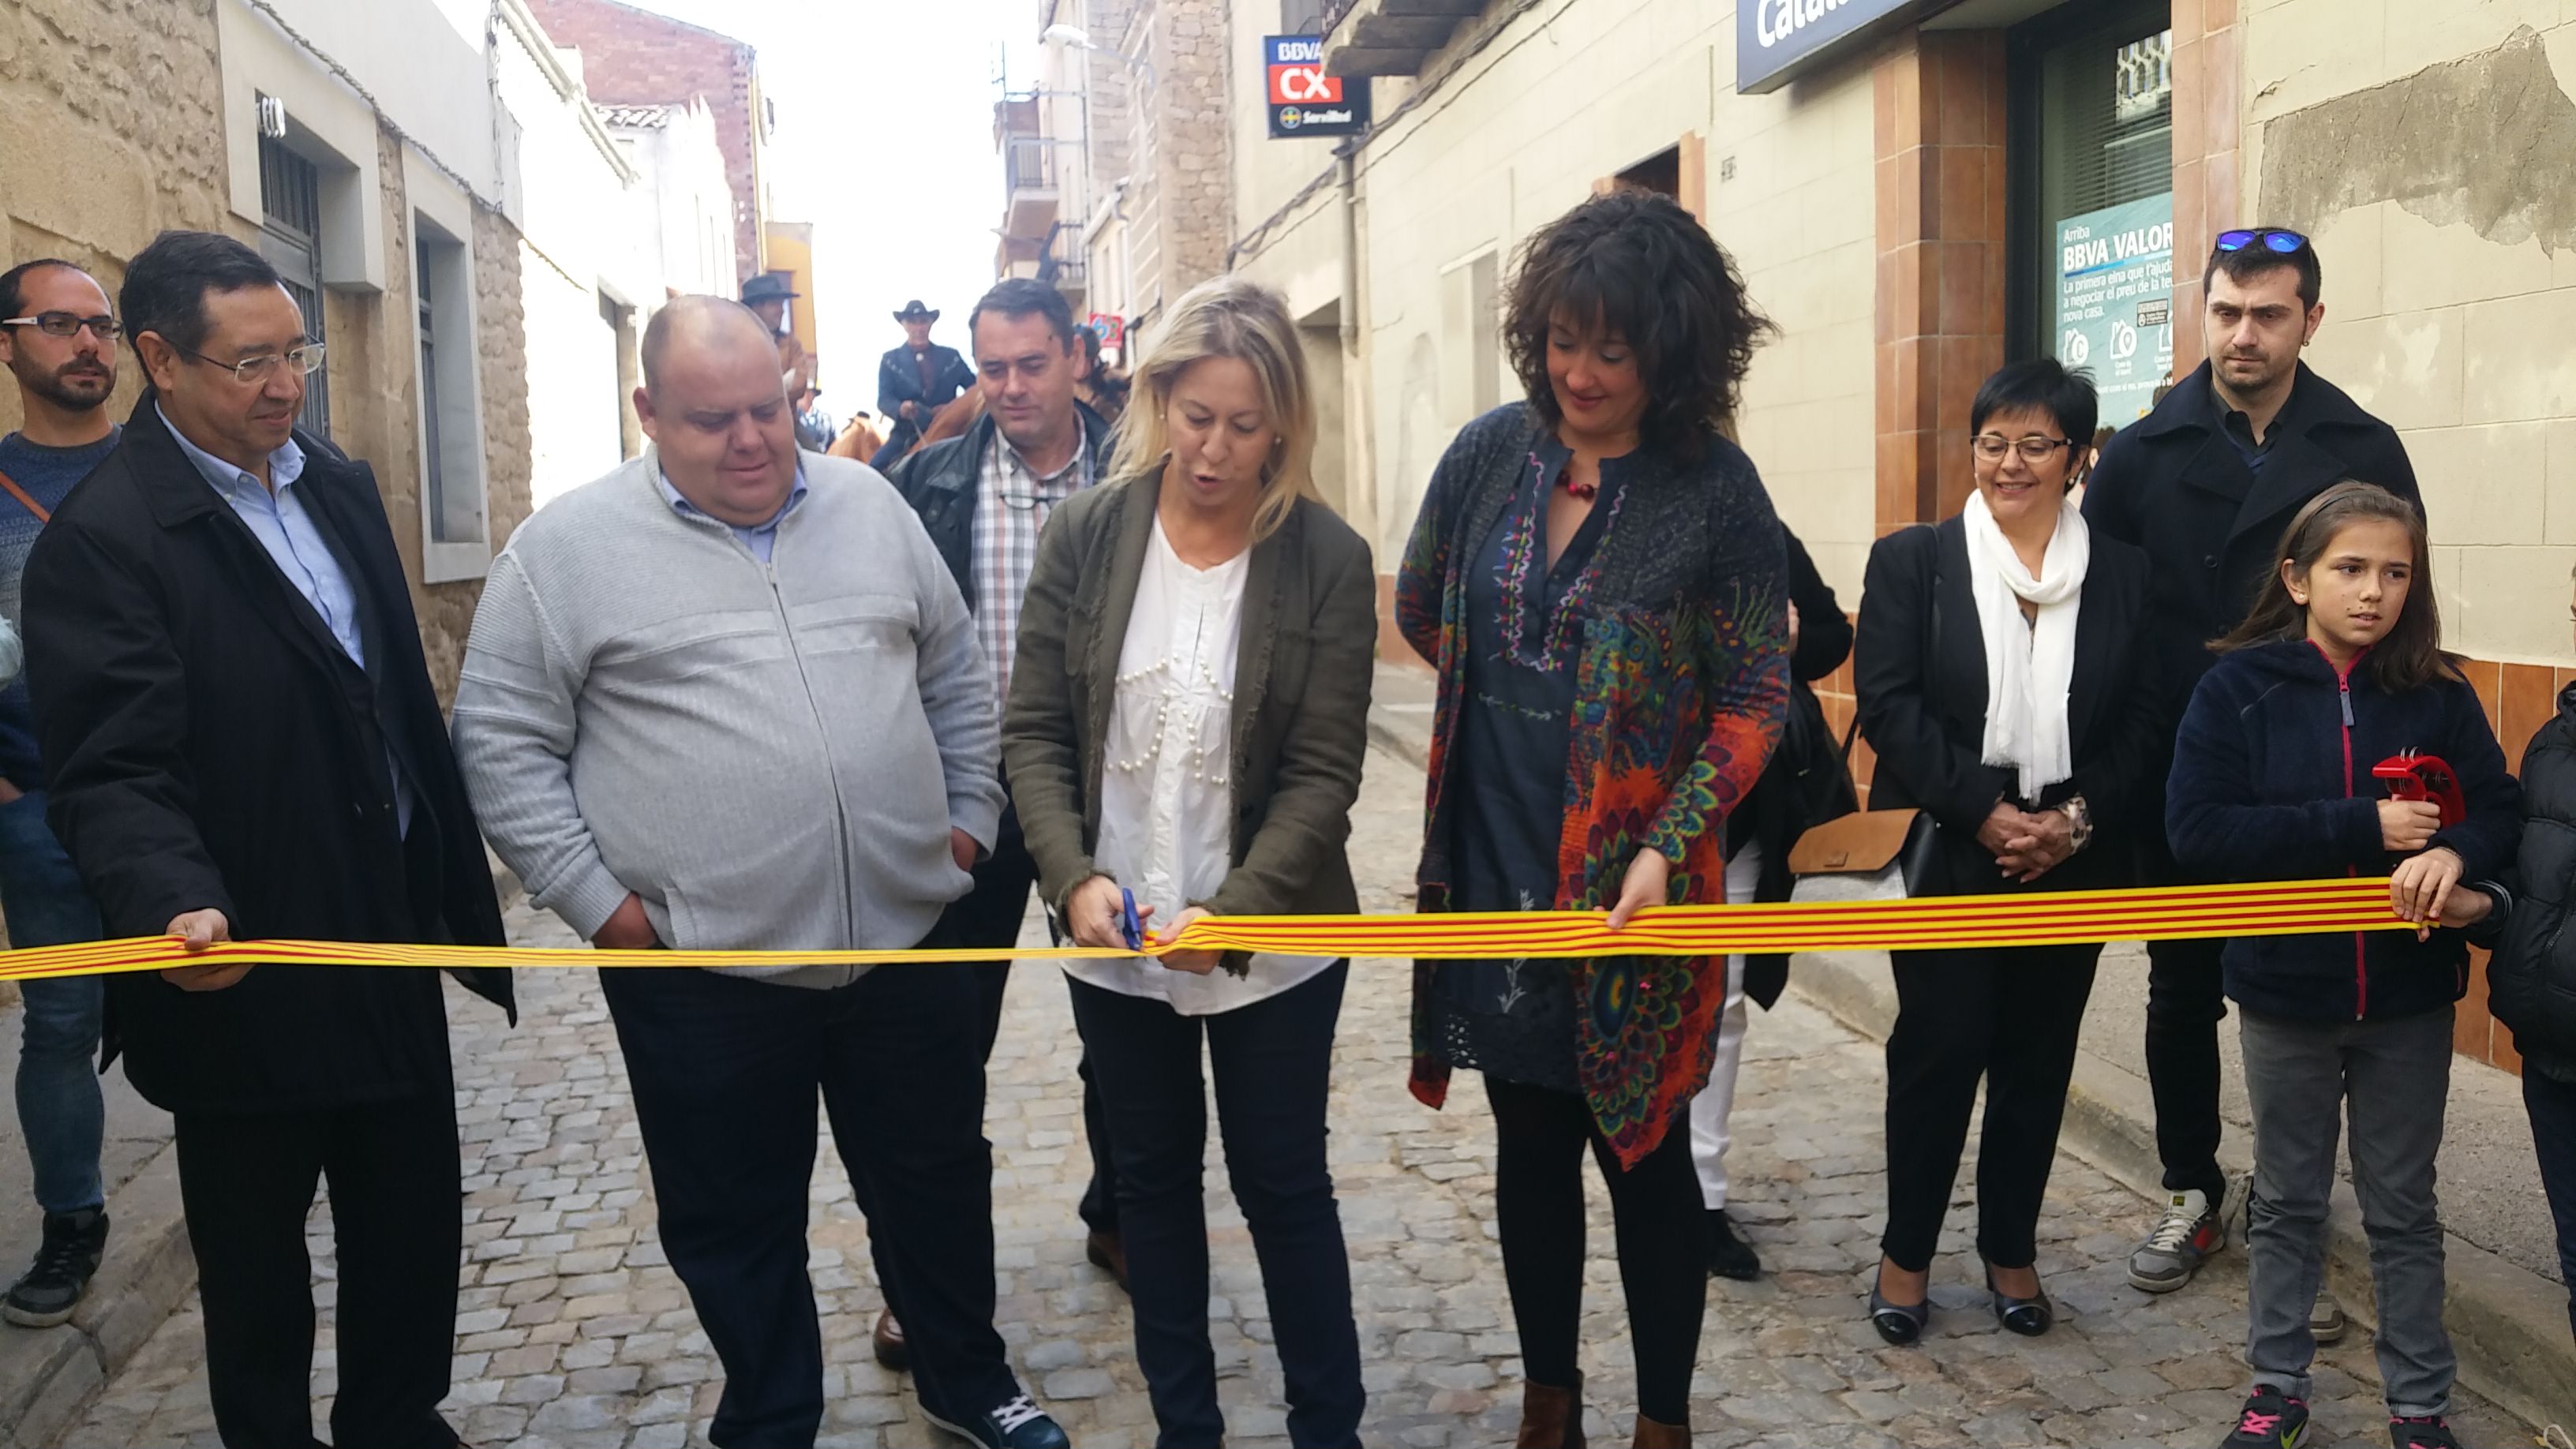 La consellera Munté ha inaugurat la 3a edició de Firalbi, a l'Albi (Garrigues)